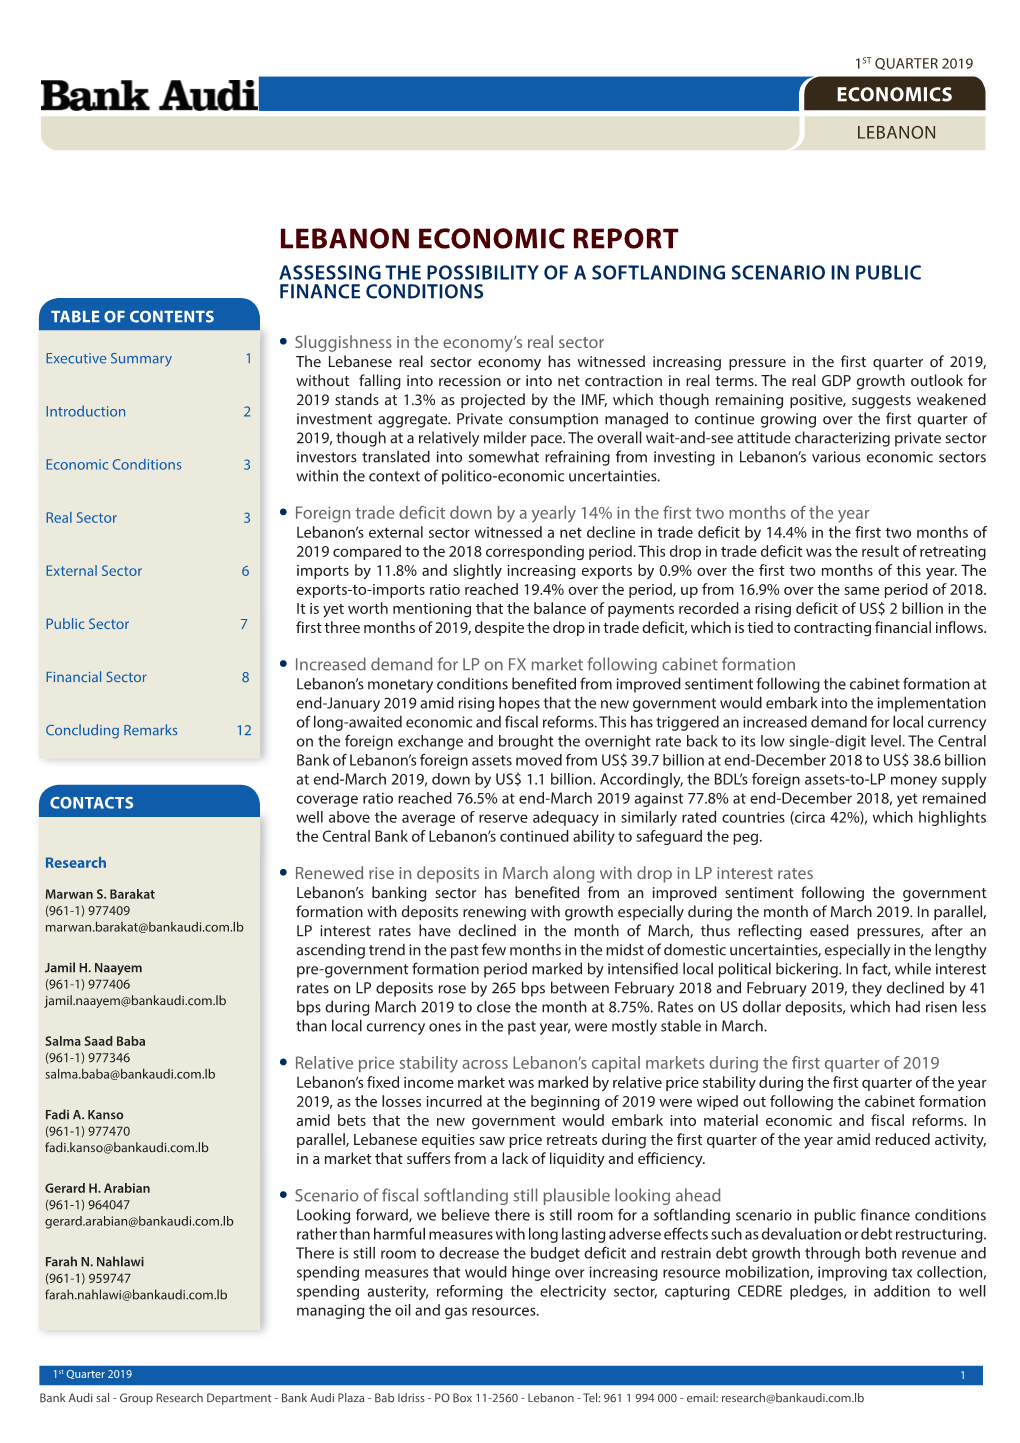 Lebanon Economic Report